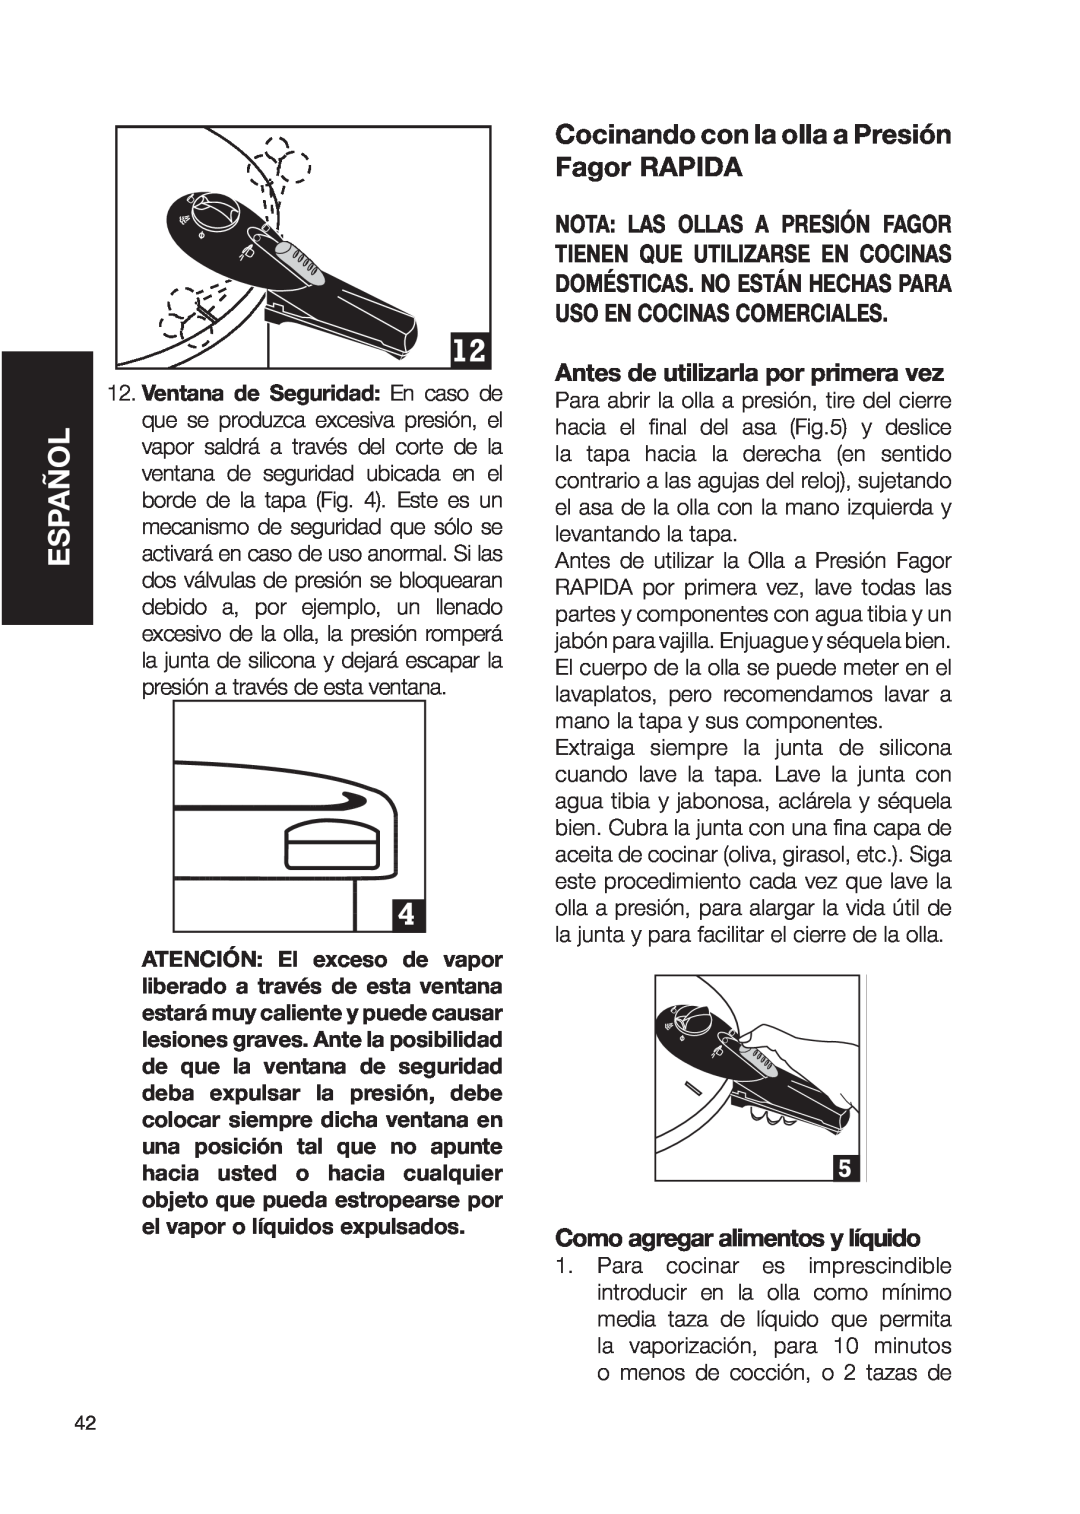 Fagor America Fagor Rapida Pressure Cooker user manual Cocinando con la olla a Presión Fagor RAPIDA, Español 